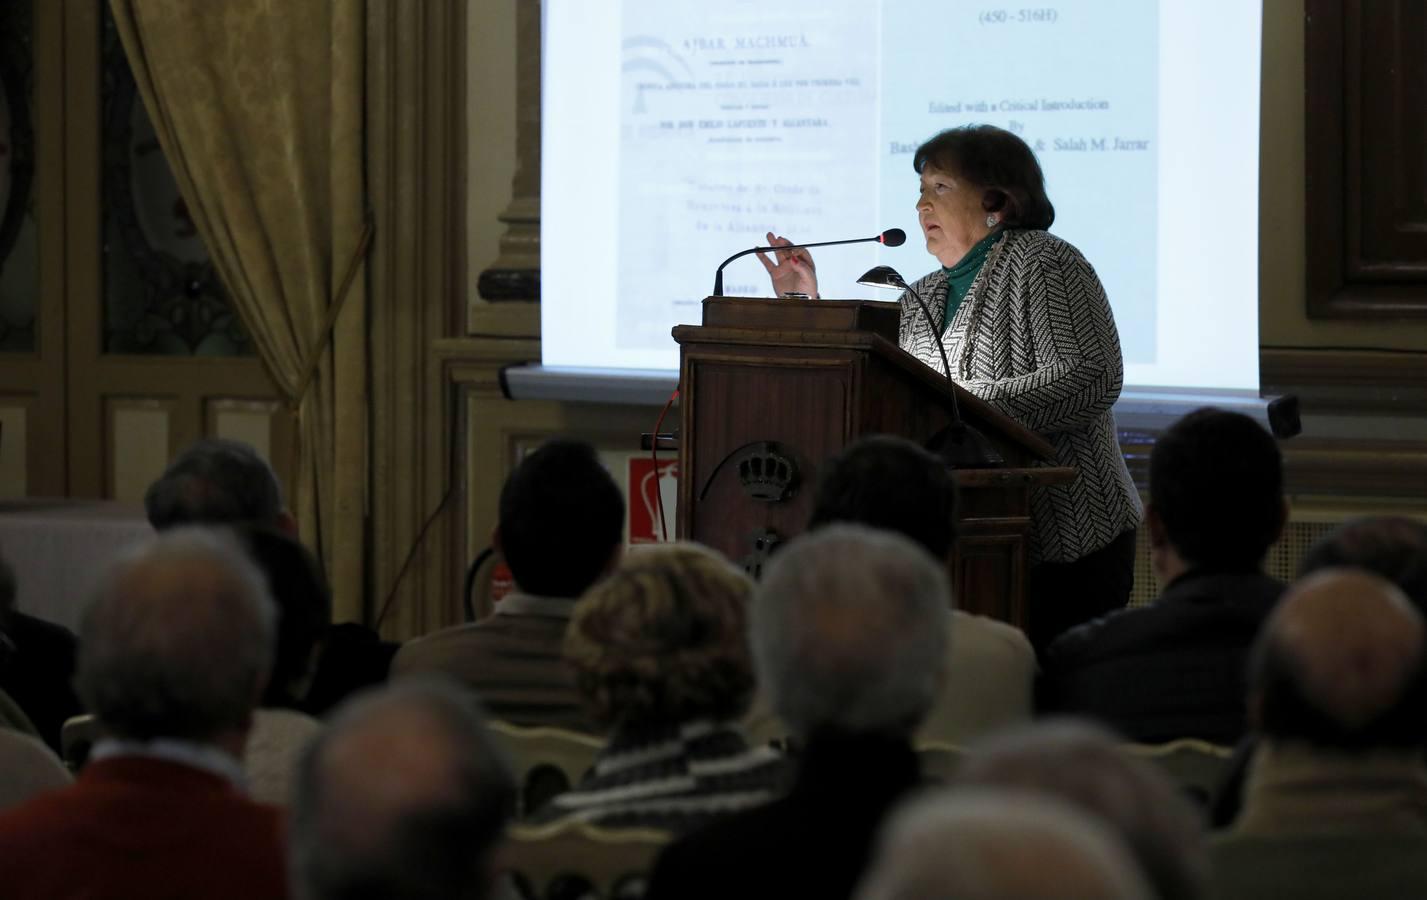 La conferencia de María Jesús Viguera en El Templo de Córdoba, en imágenes